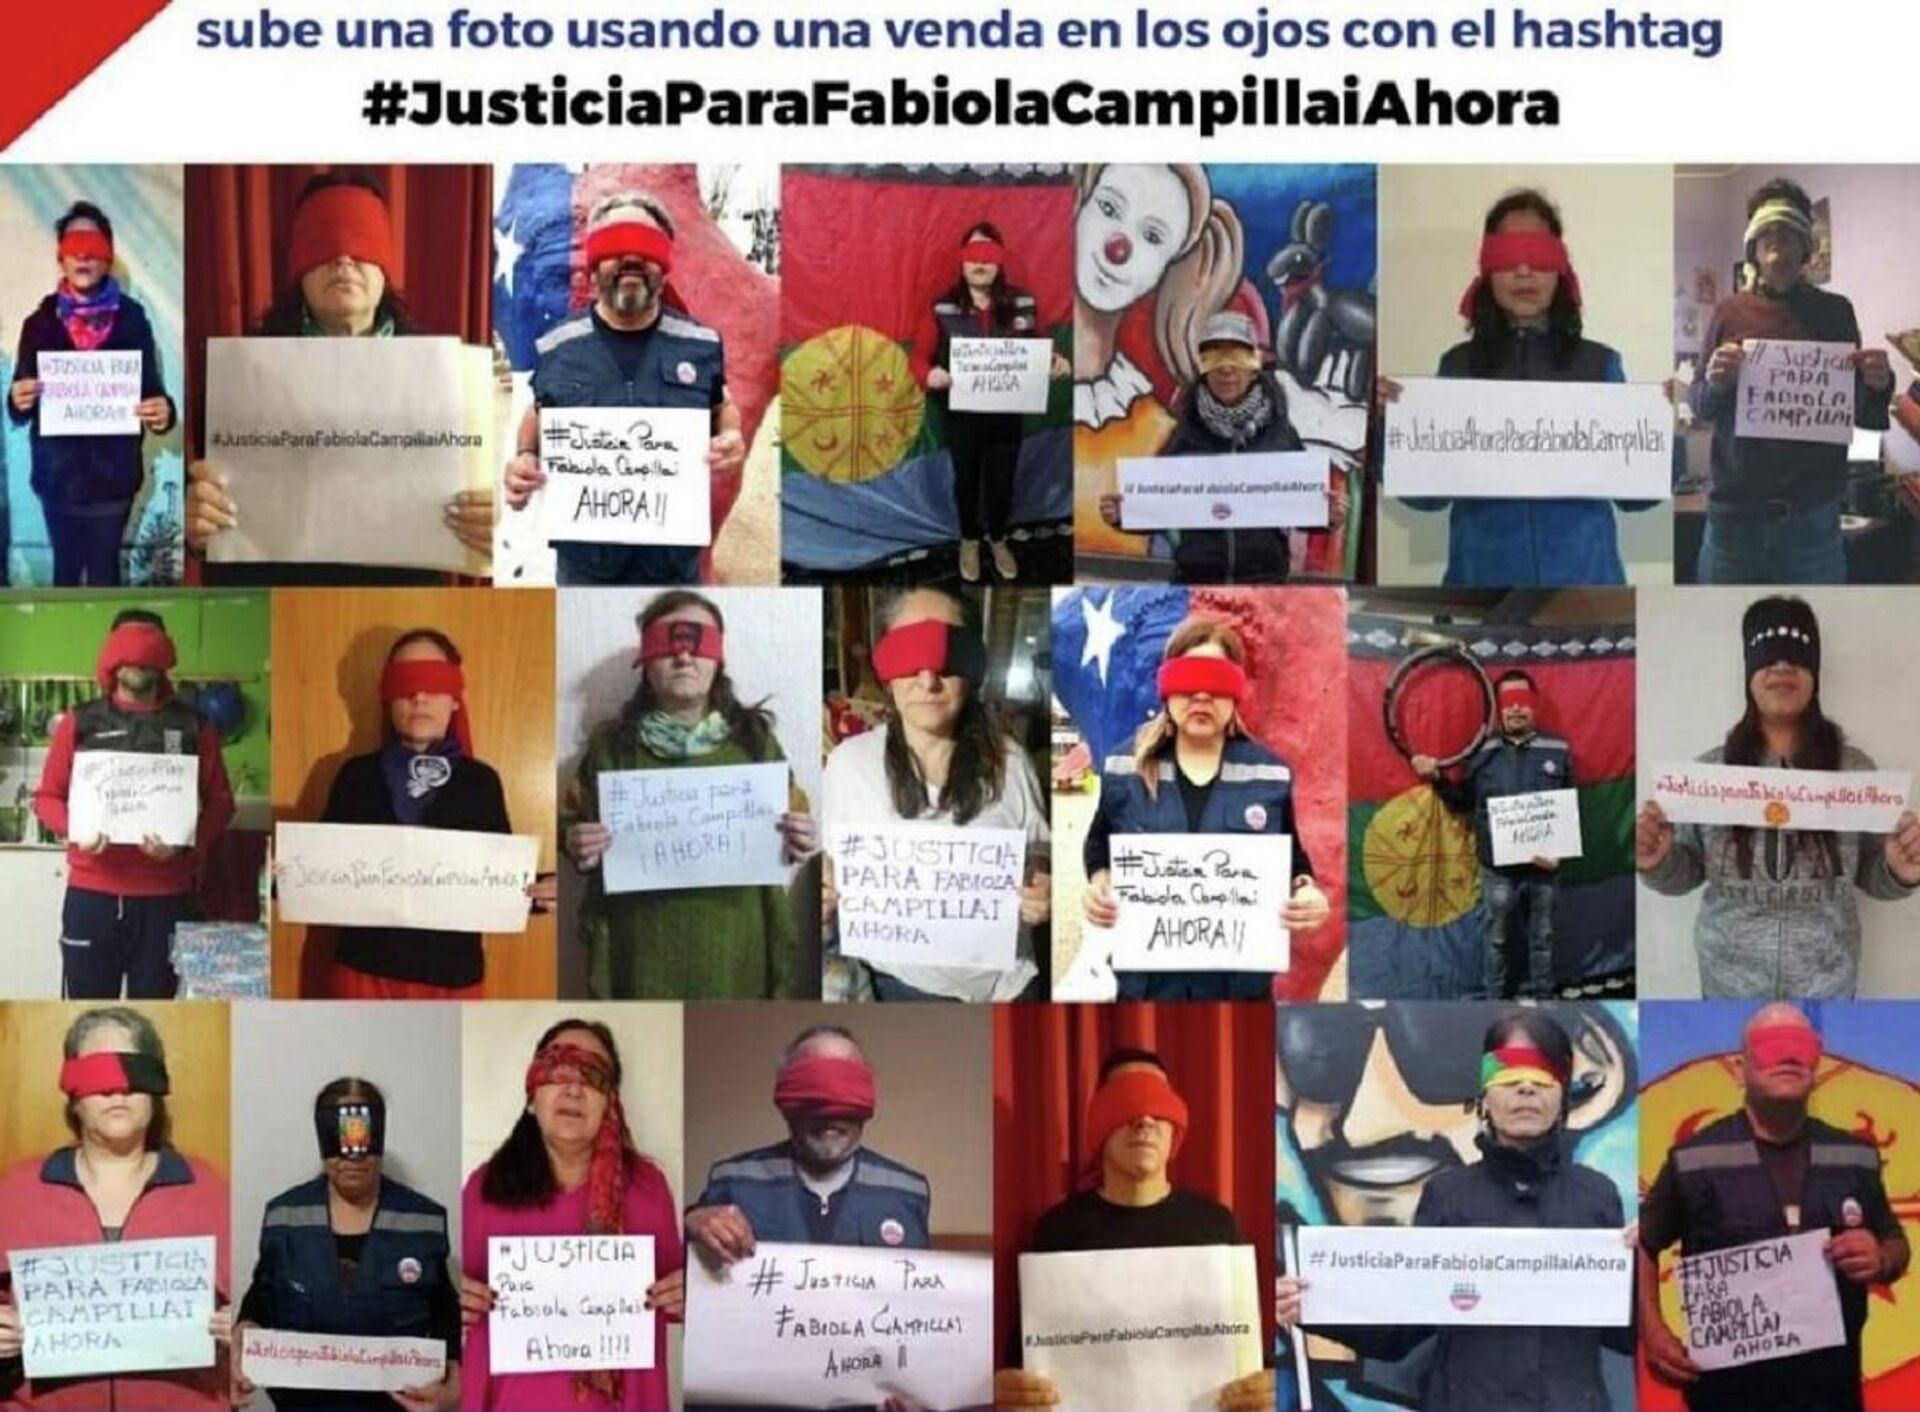 Campaña por justicia para Fabiola Campillai en redes sociales - Sputnik Mundo, 1920, 14.06.2021